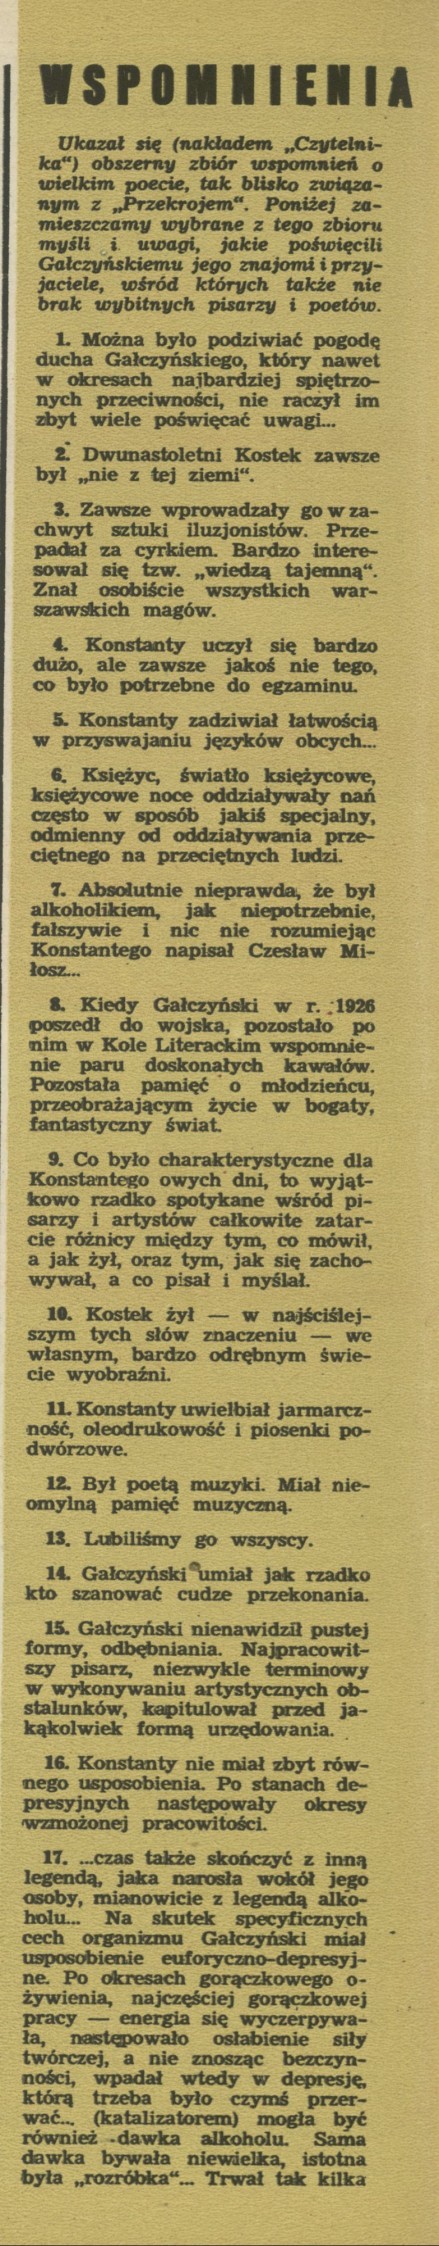 Wspomnienia o Gałczyńskim